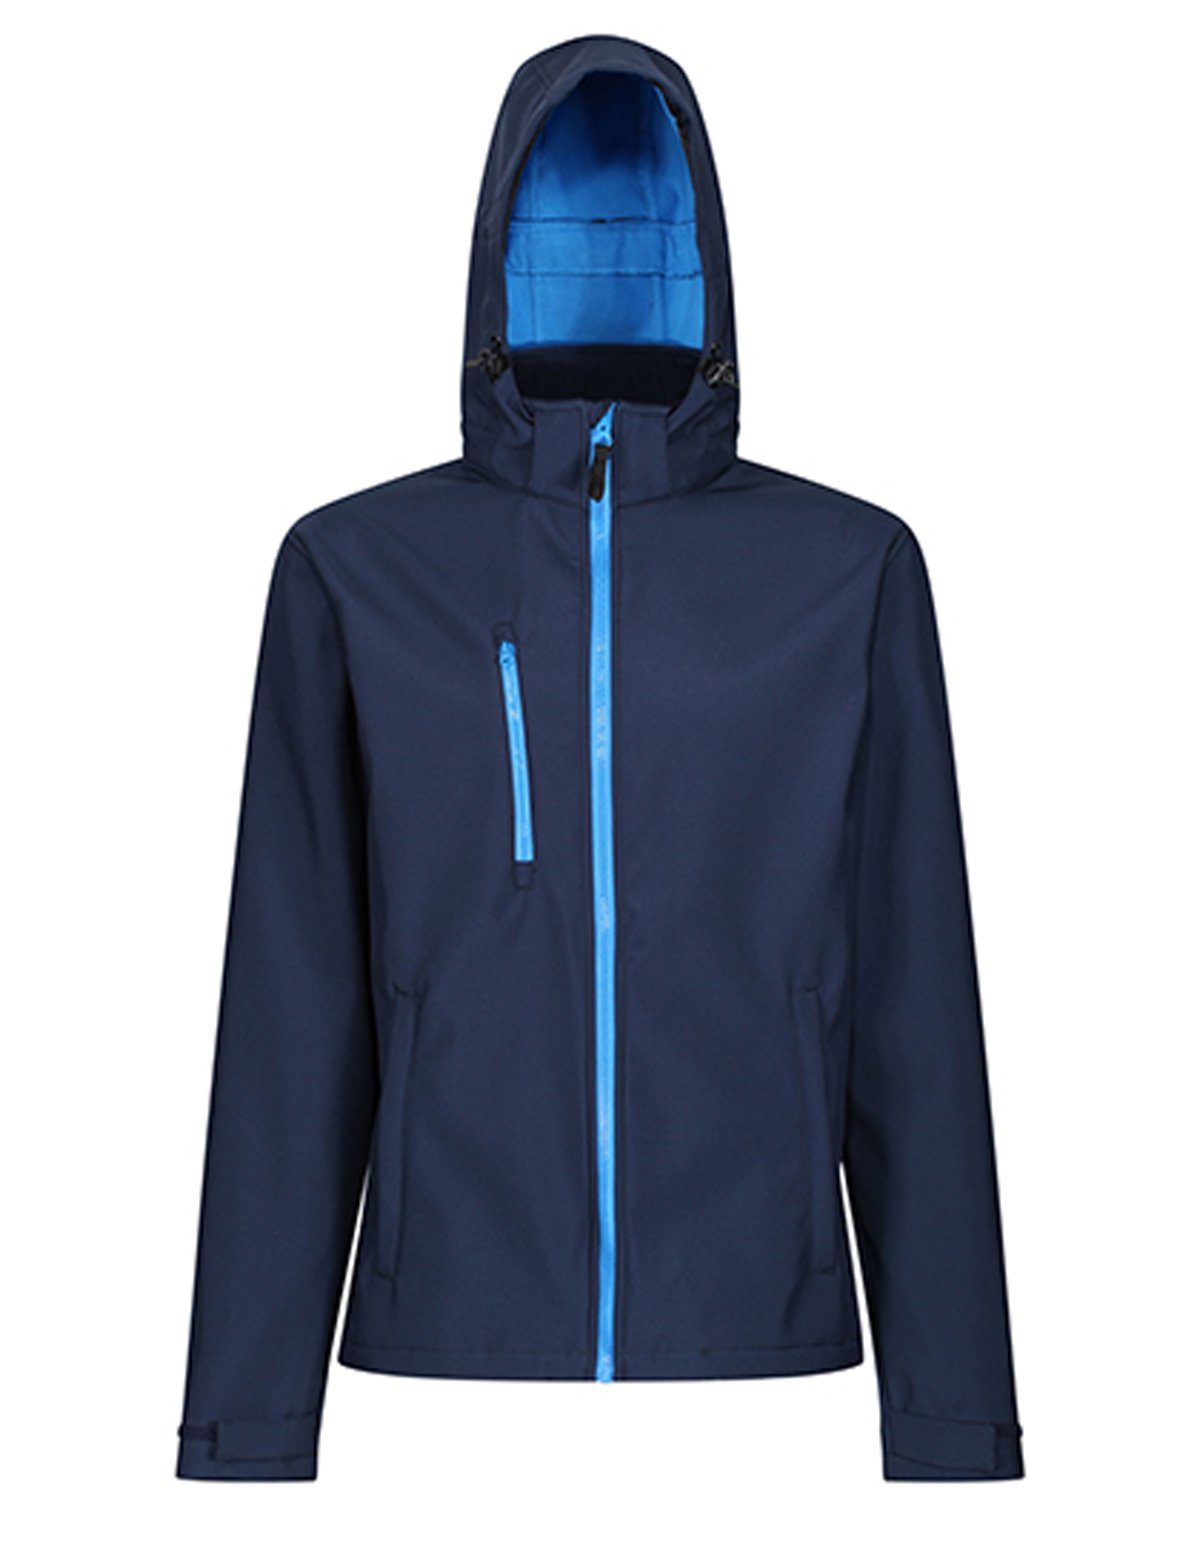 Venturer 3-layer Professional Regatta Softshell Softshelljacke RG701 Hooded Navy-French Blue Printable Jacket